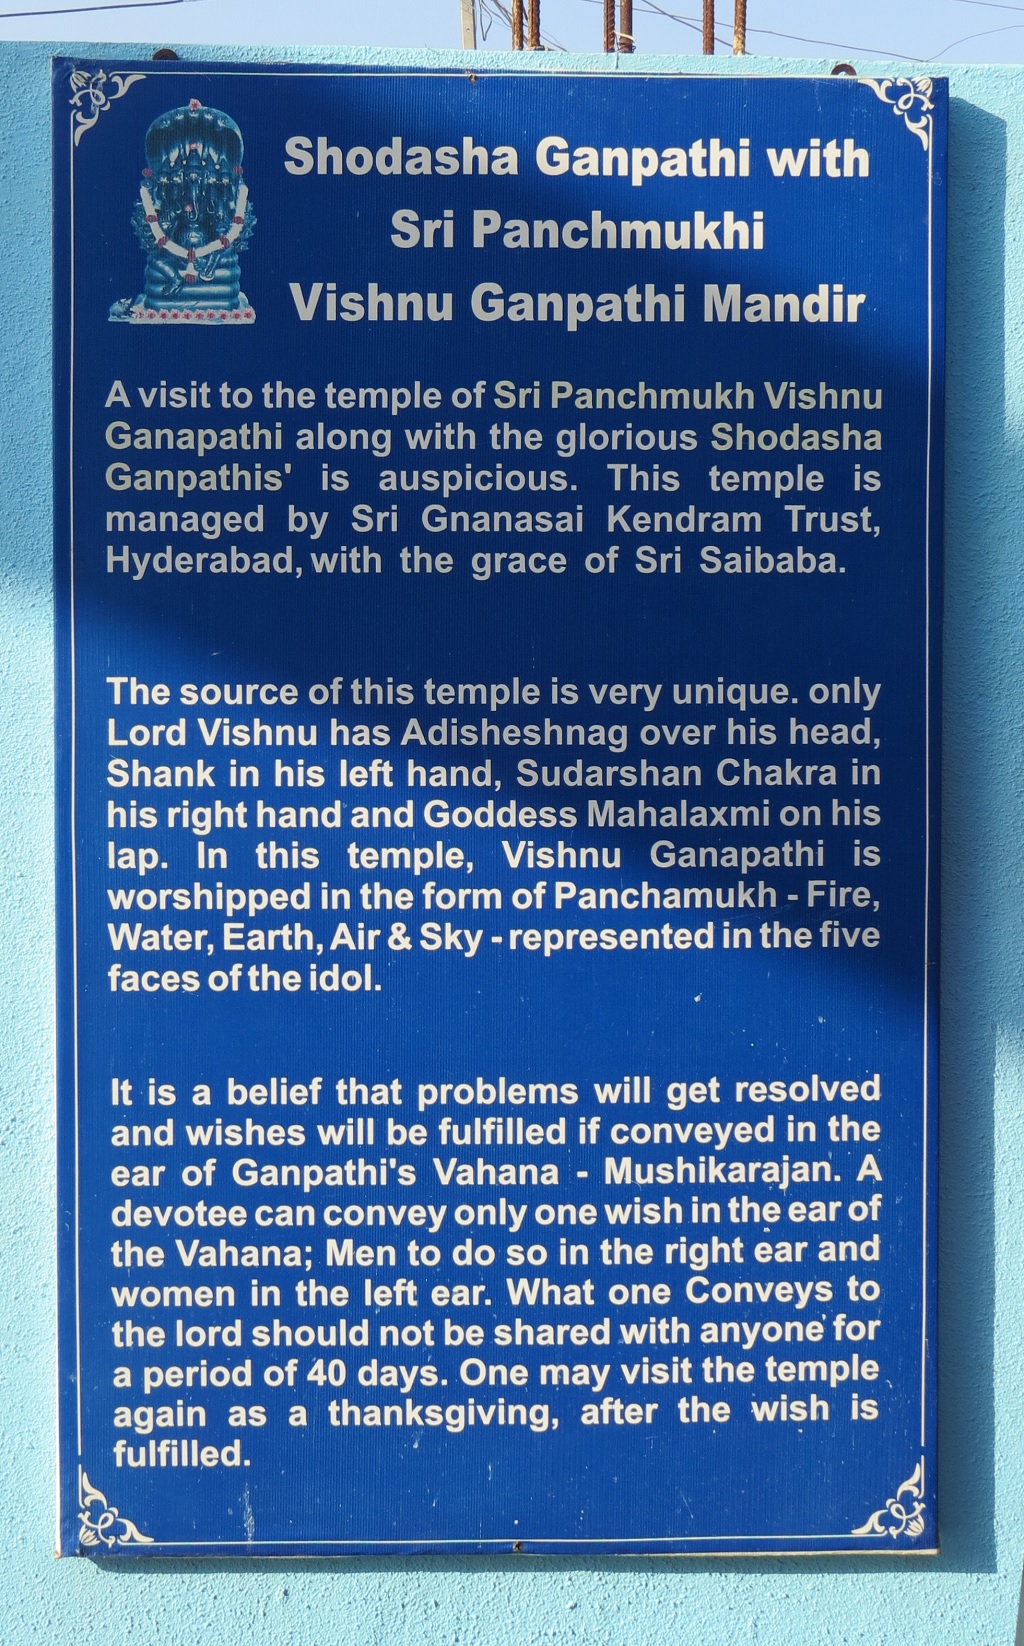 About: Shodasha Ganpathi with Sri Panchmukhi Vishnu Ganpathi Mandir